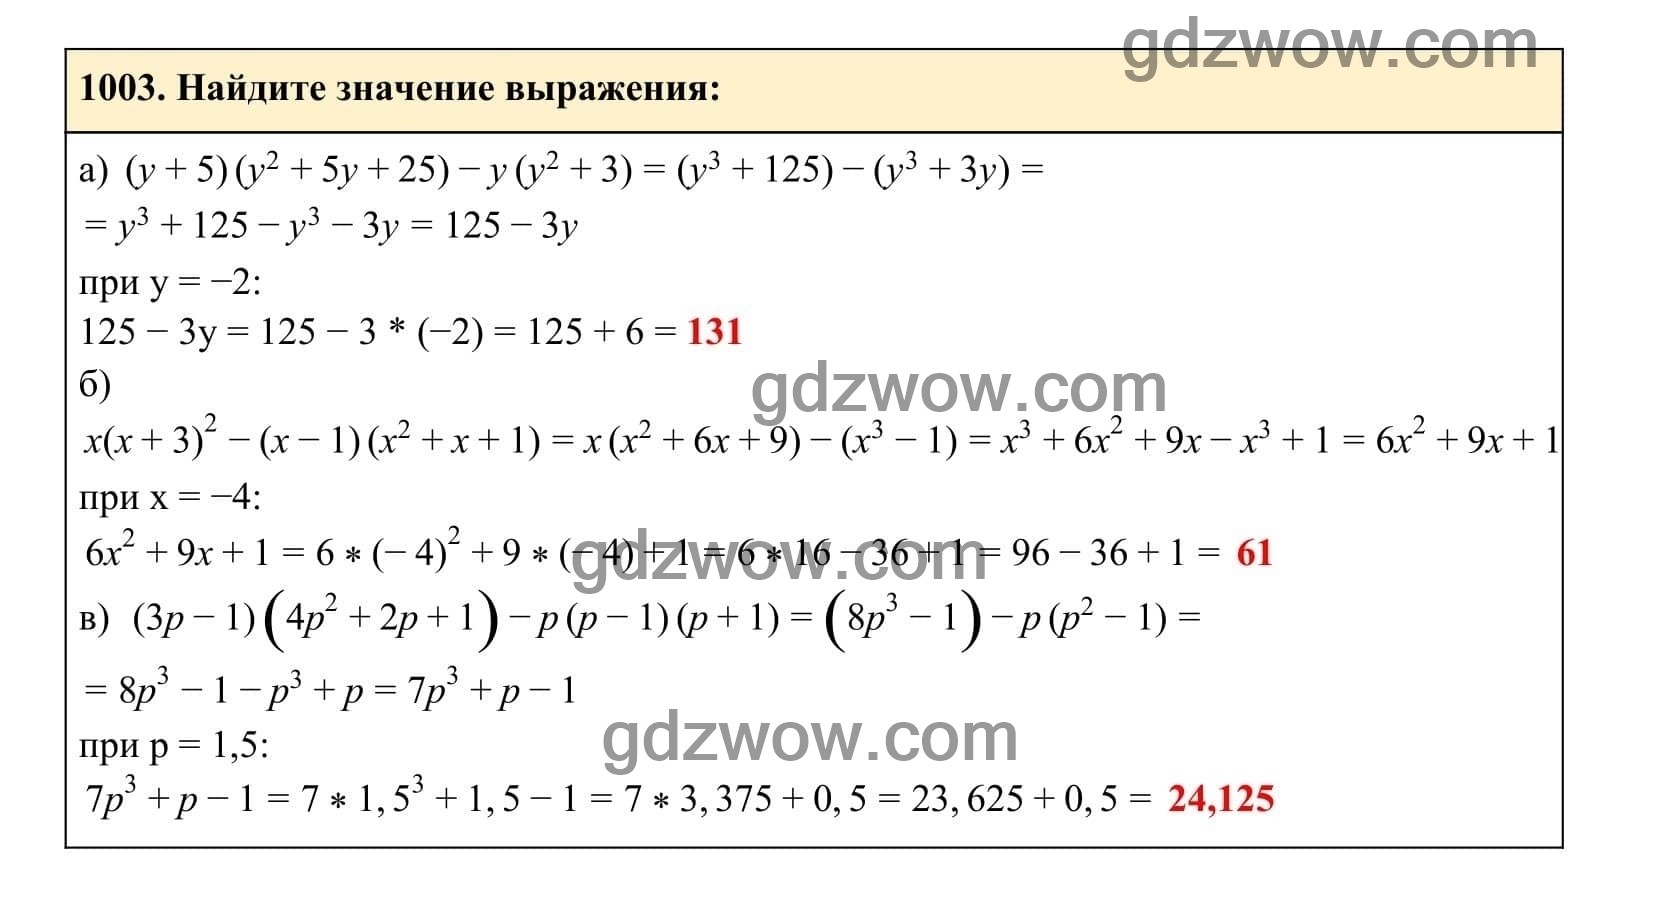 Упражнение 1003 - ГДЗ по Алгебре 7 класс Учебник Макарычев (решебник) - GDZwow